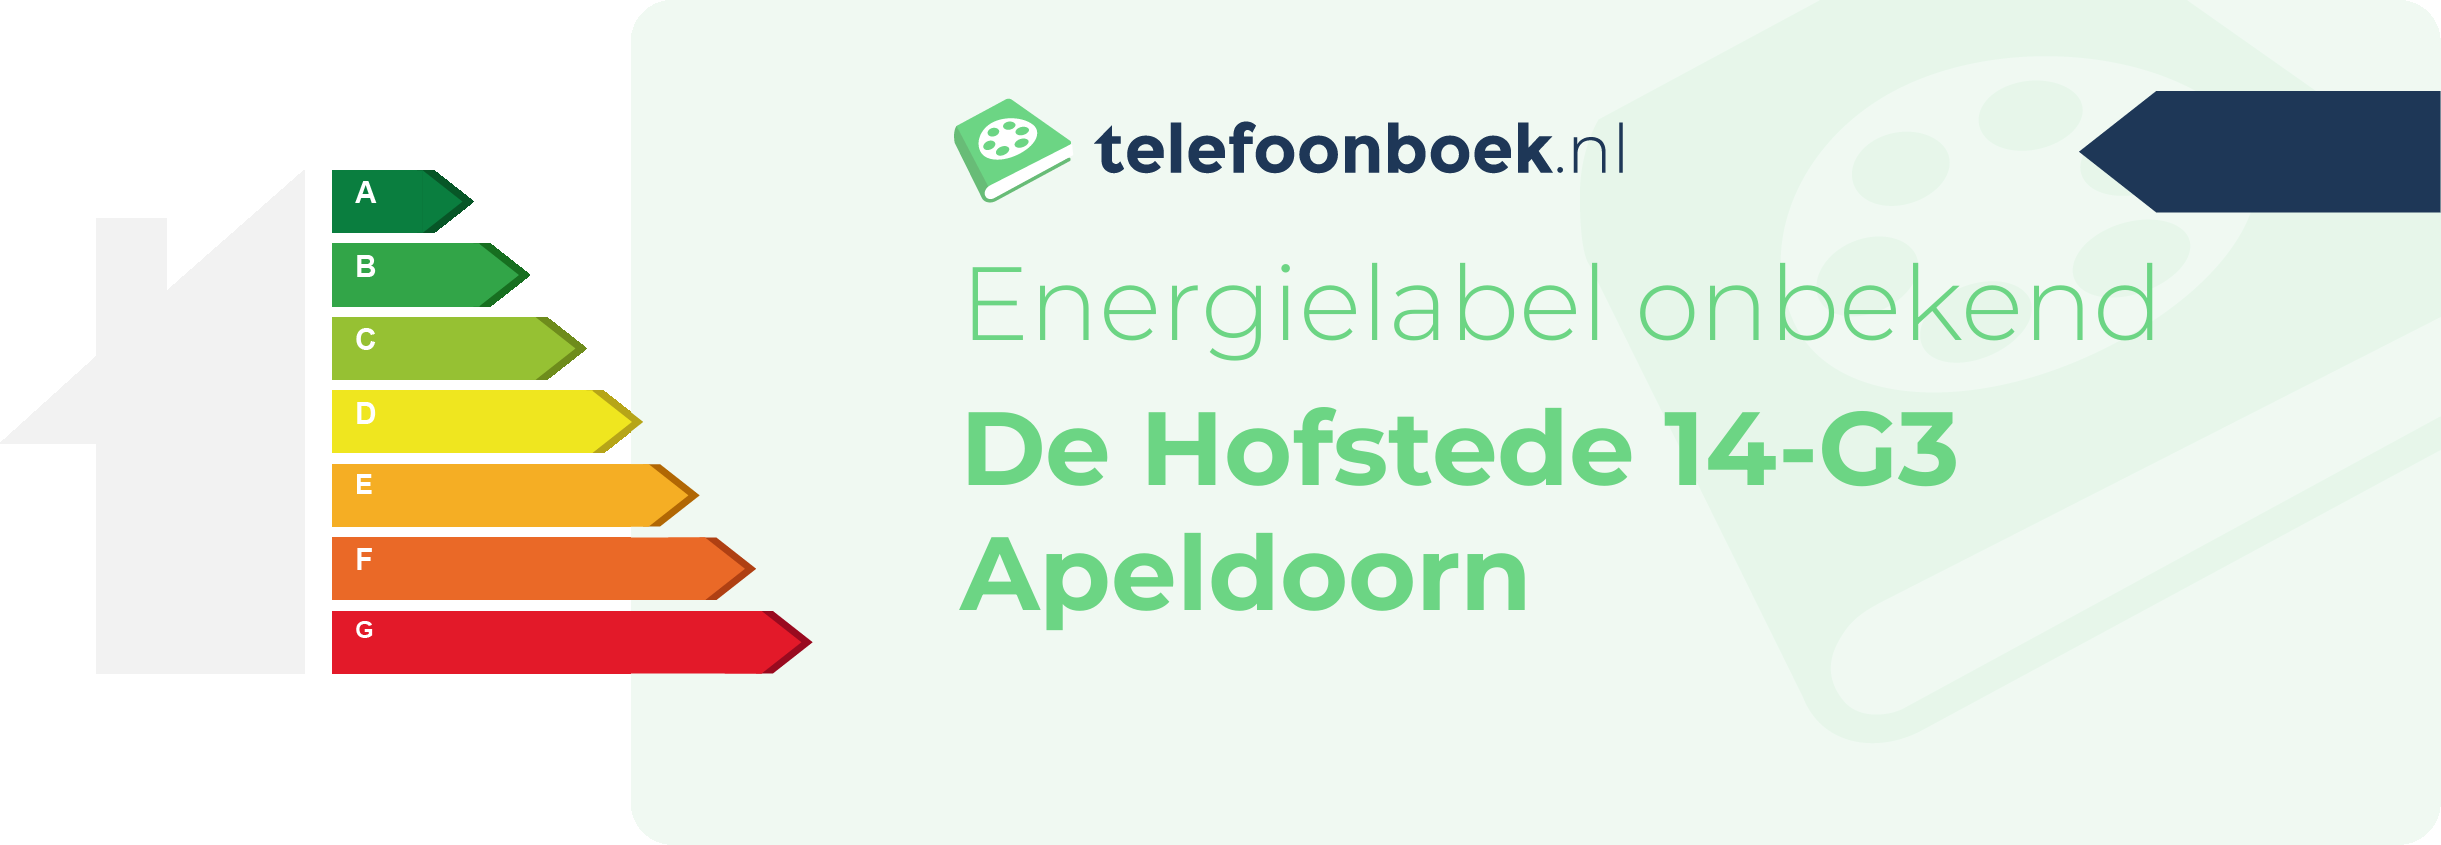 Energielabel De Hofstede 14-G3 Apeldoorn